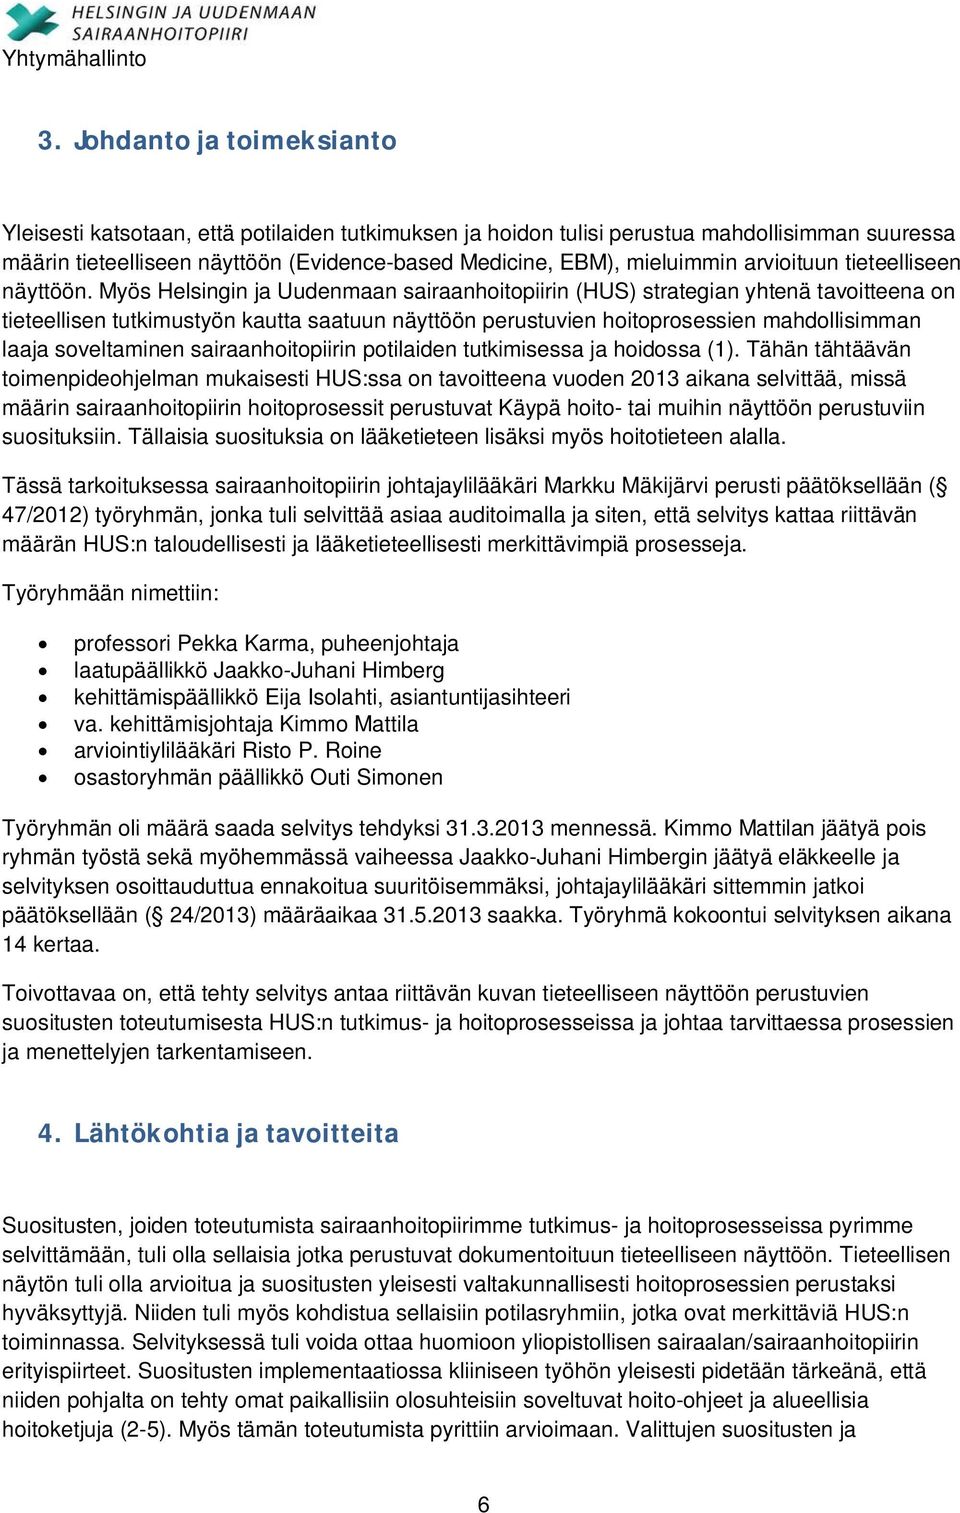 Myös Helsingin ja Uudenmaan sairaanhoitopiirin (HUS) strategian yhtenä tavoitteena on tieteellisen tutkimustyön kautta saatuun näyttöön perustuvien hoitoprosessien mahdollisimman laaja soveltaminen